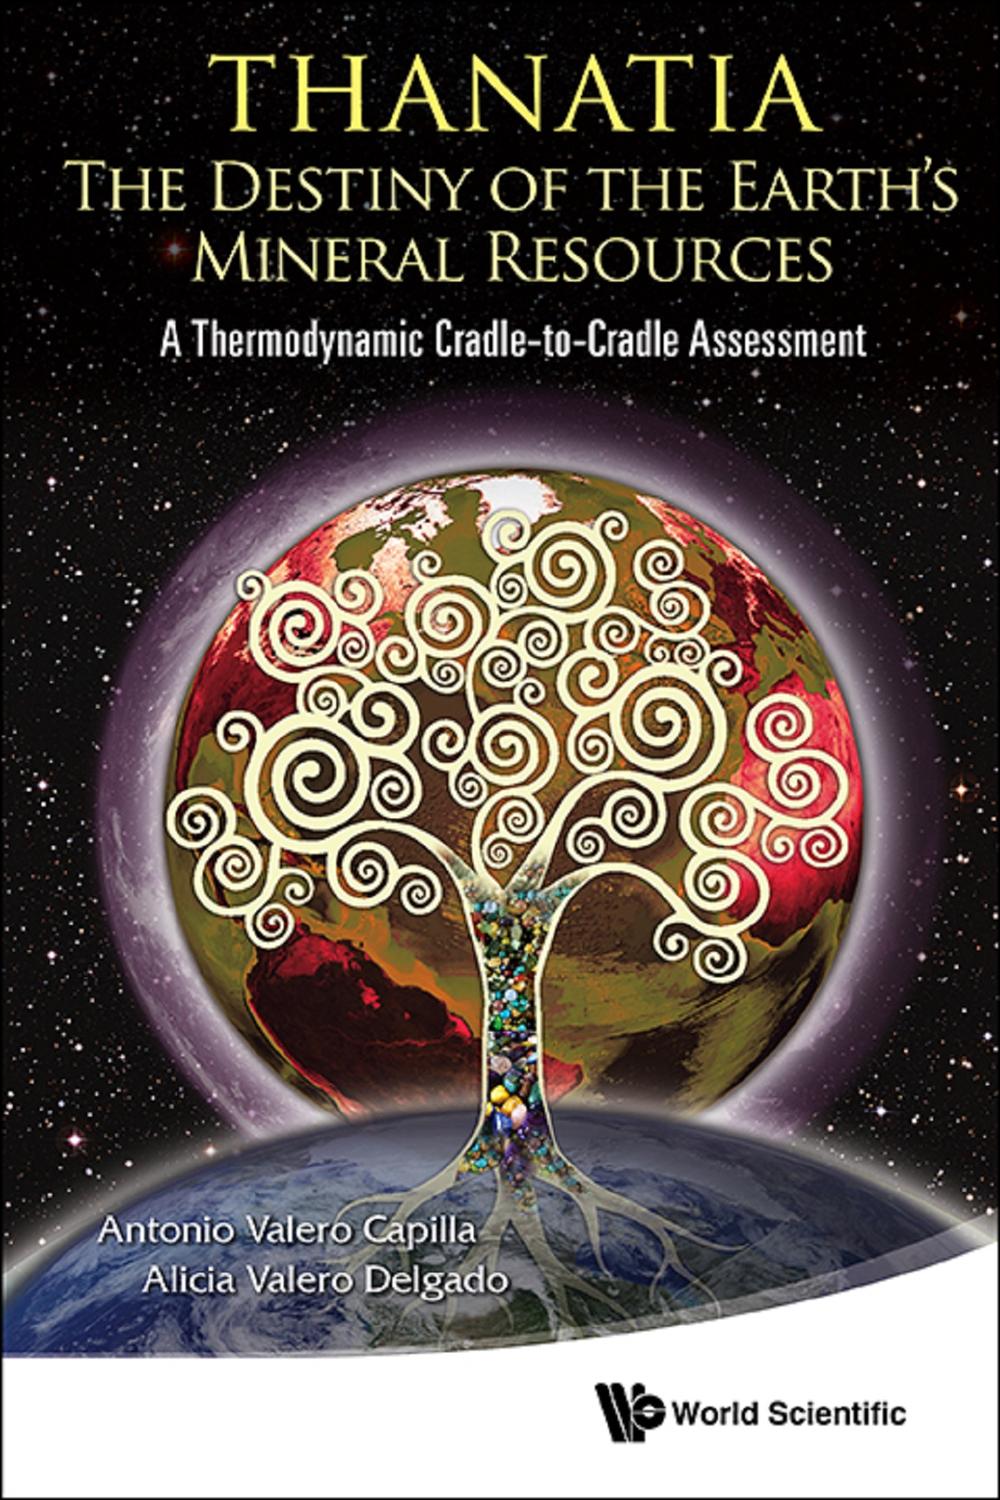 Thanatia: The Destiny Of The Earth's Mineral Resources - A Thermodynamic Cradle-to-cradle Assessment - Antonio Valero Capilla, Alicia Valero Delgado